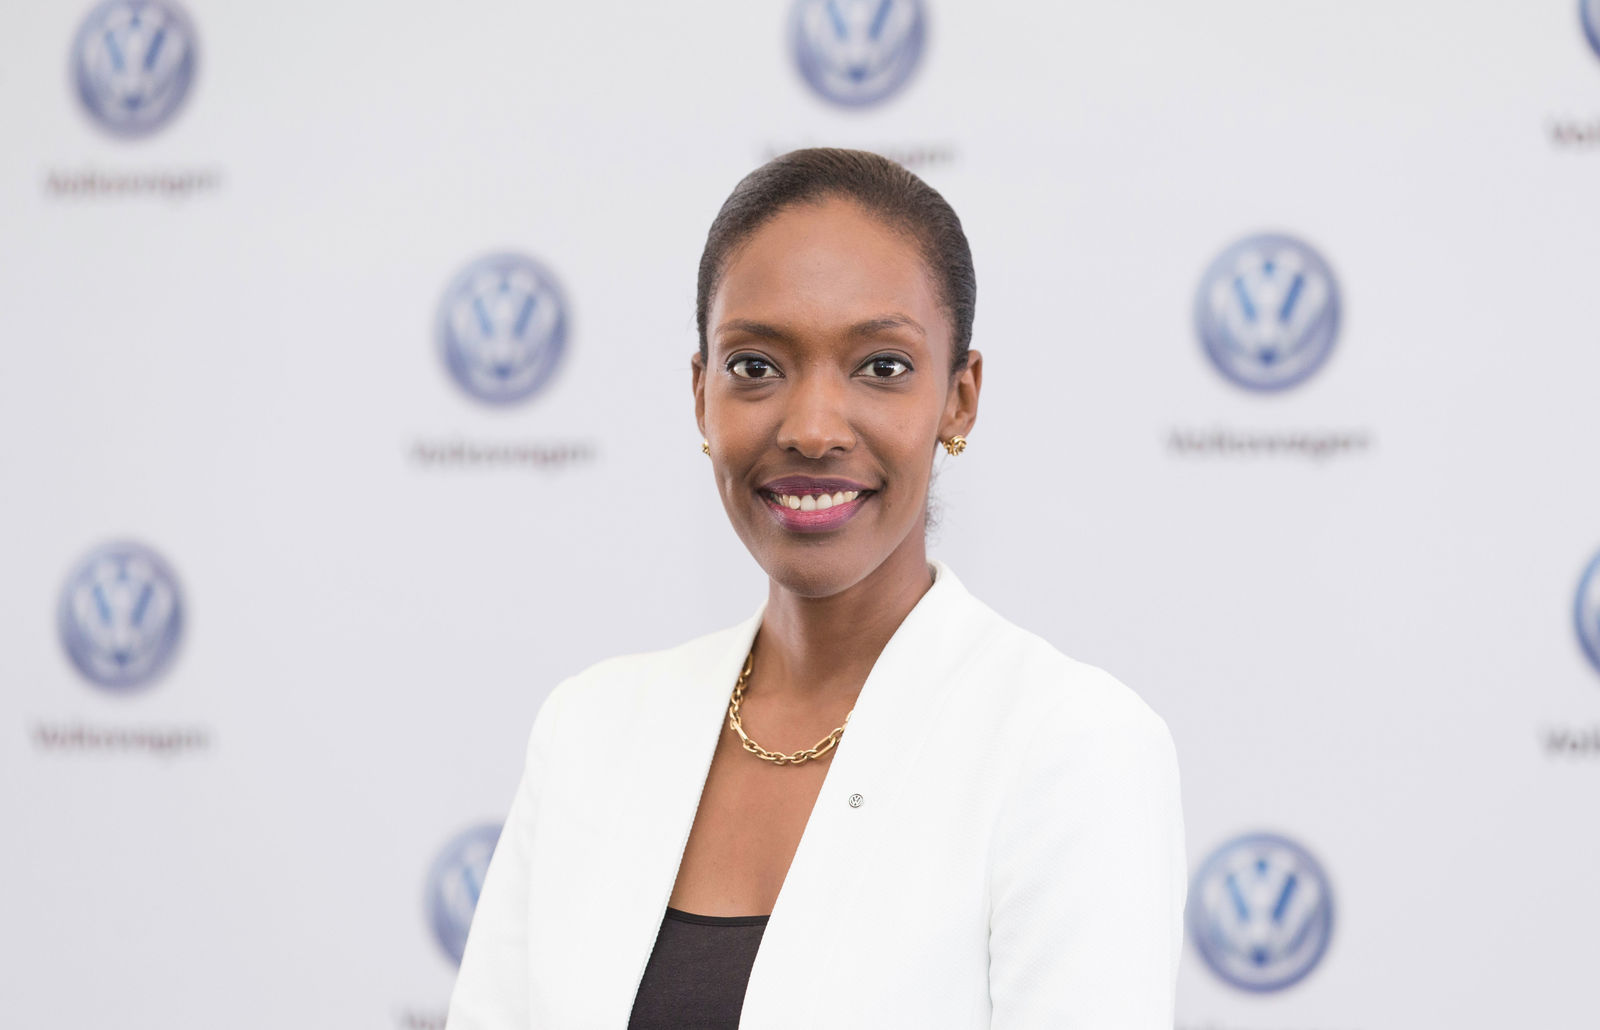 Meilenstein in Afrika: Volkswagen startet lokale Produktion und Car Sharing in Ruanda